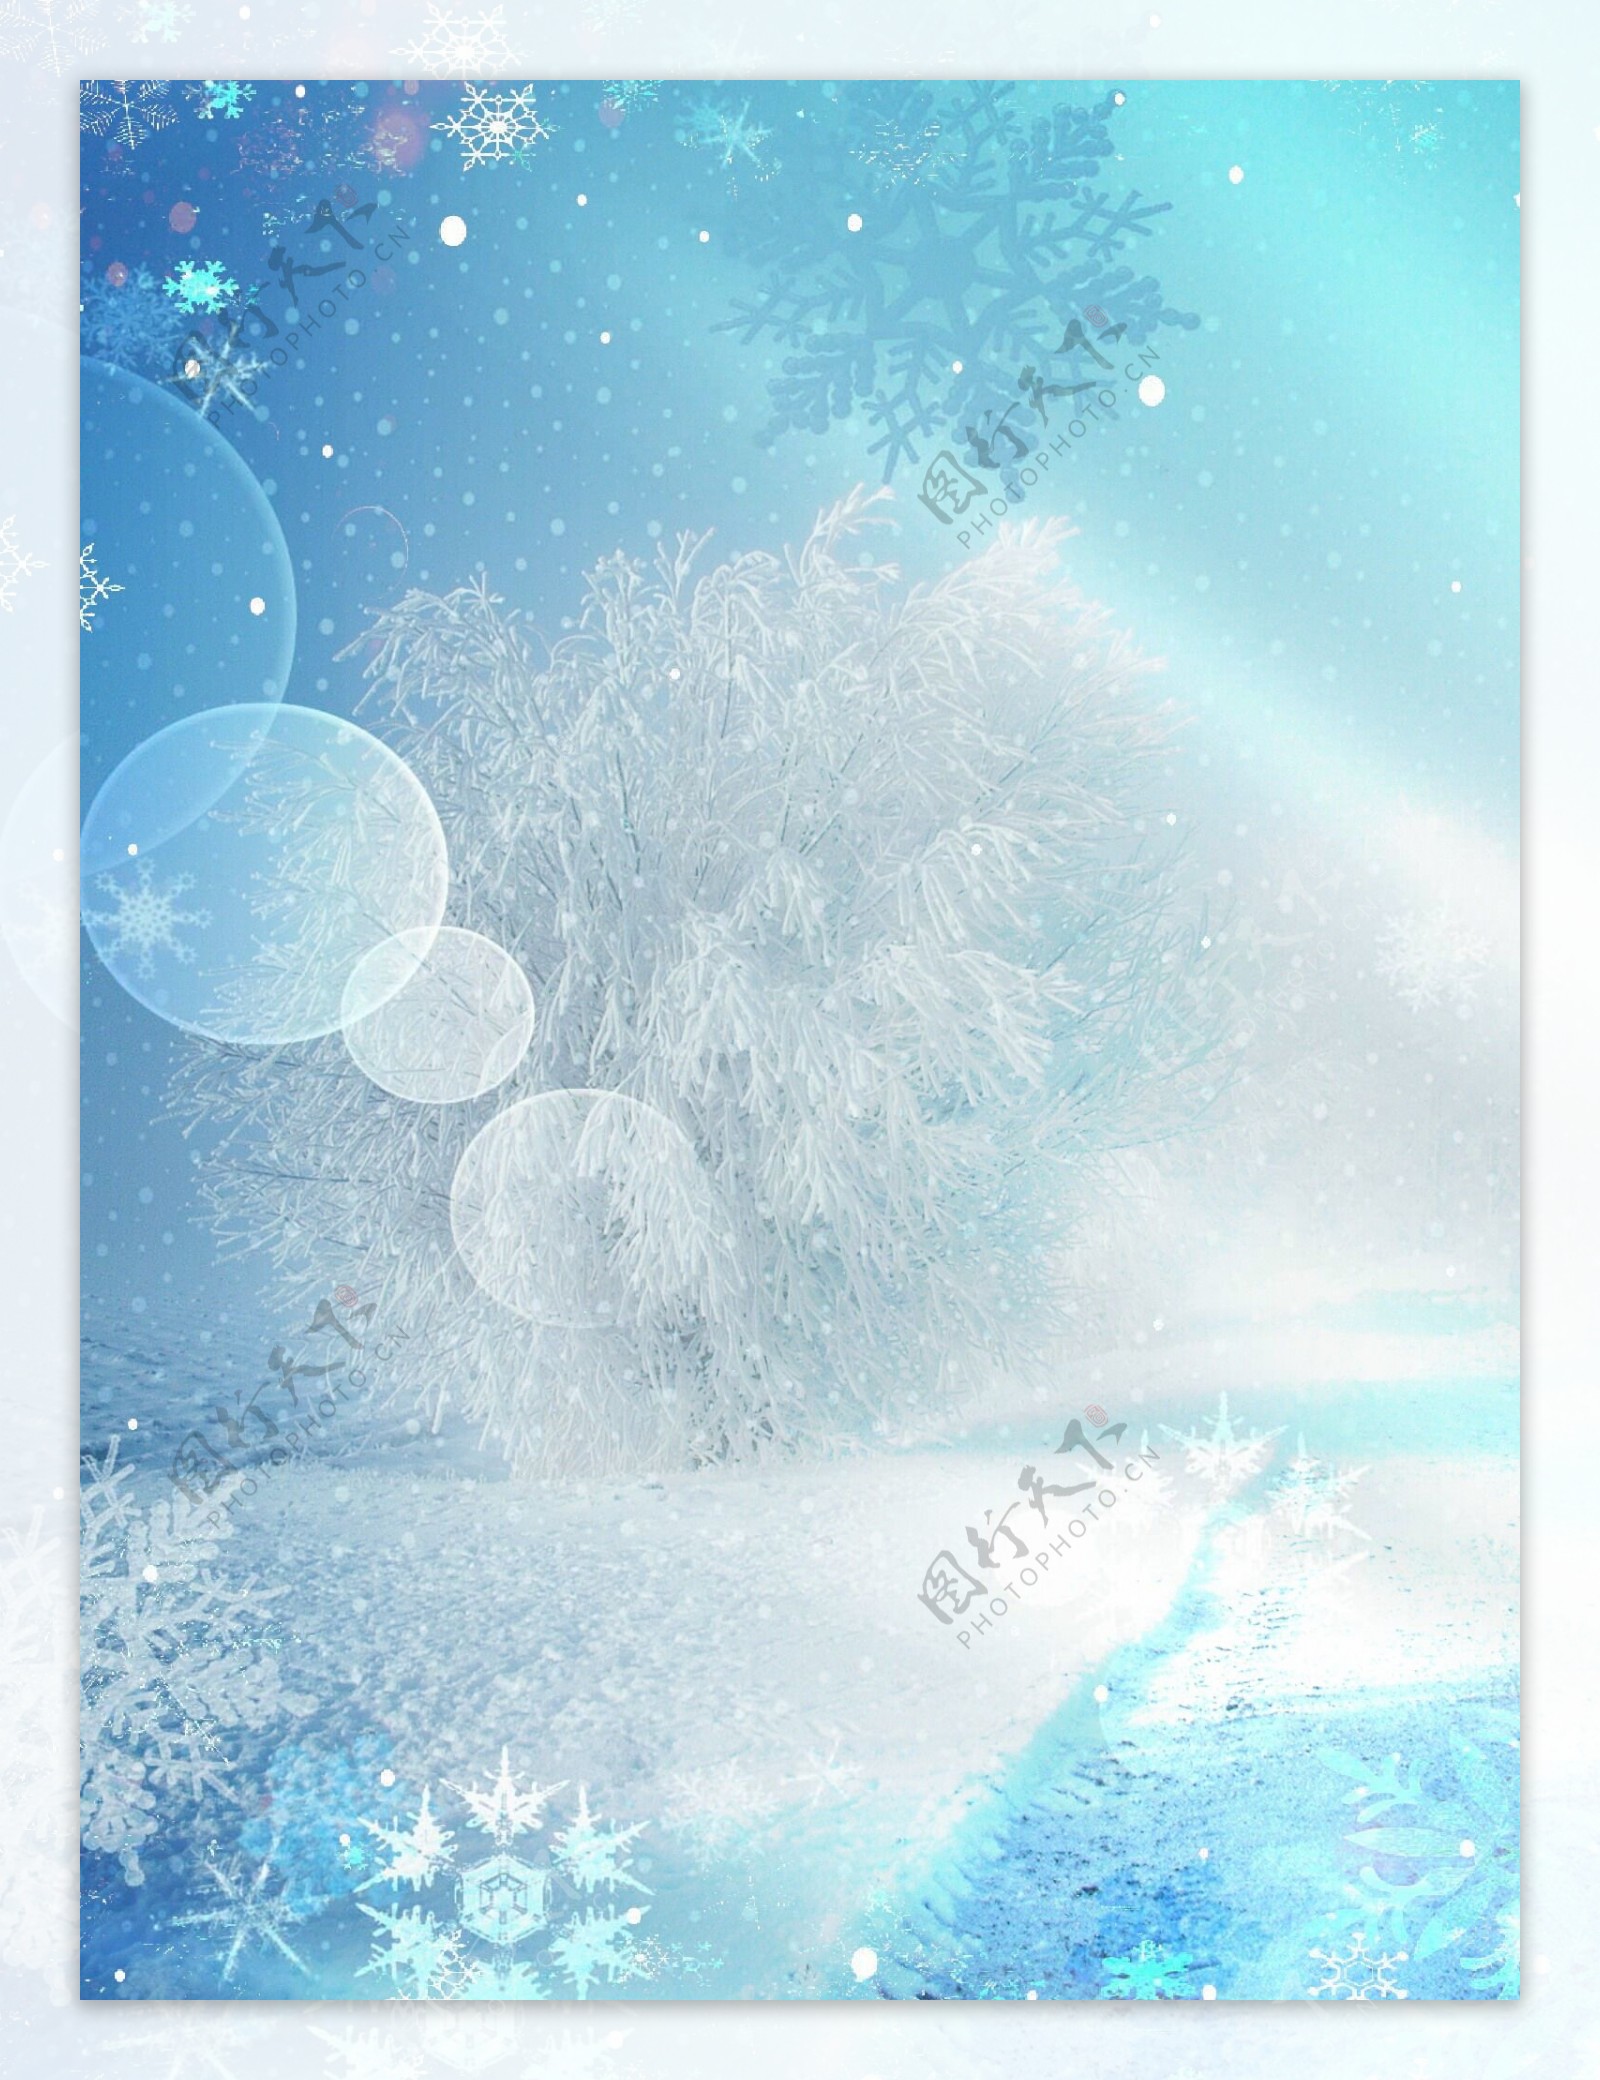 梦幻冬雪背景图片